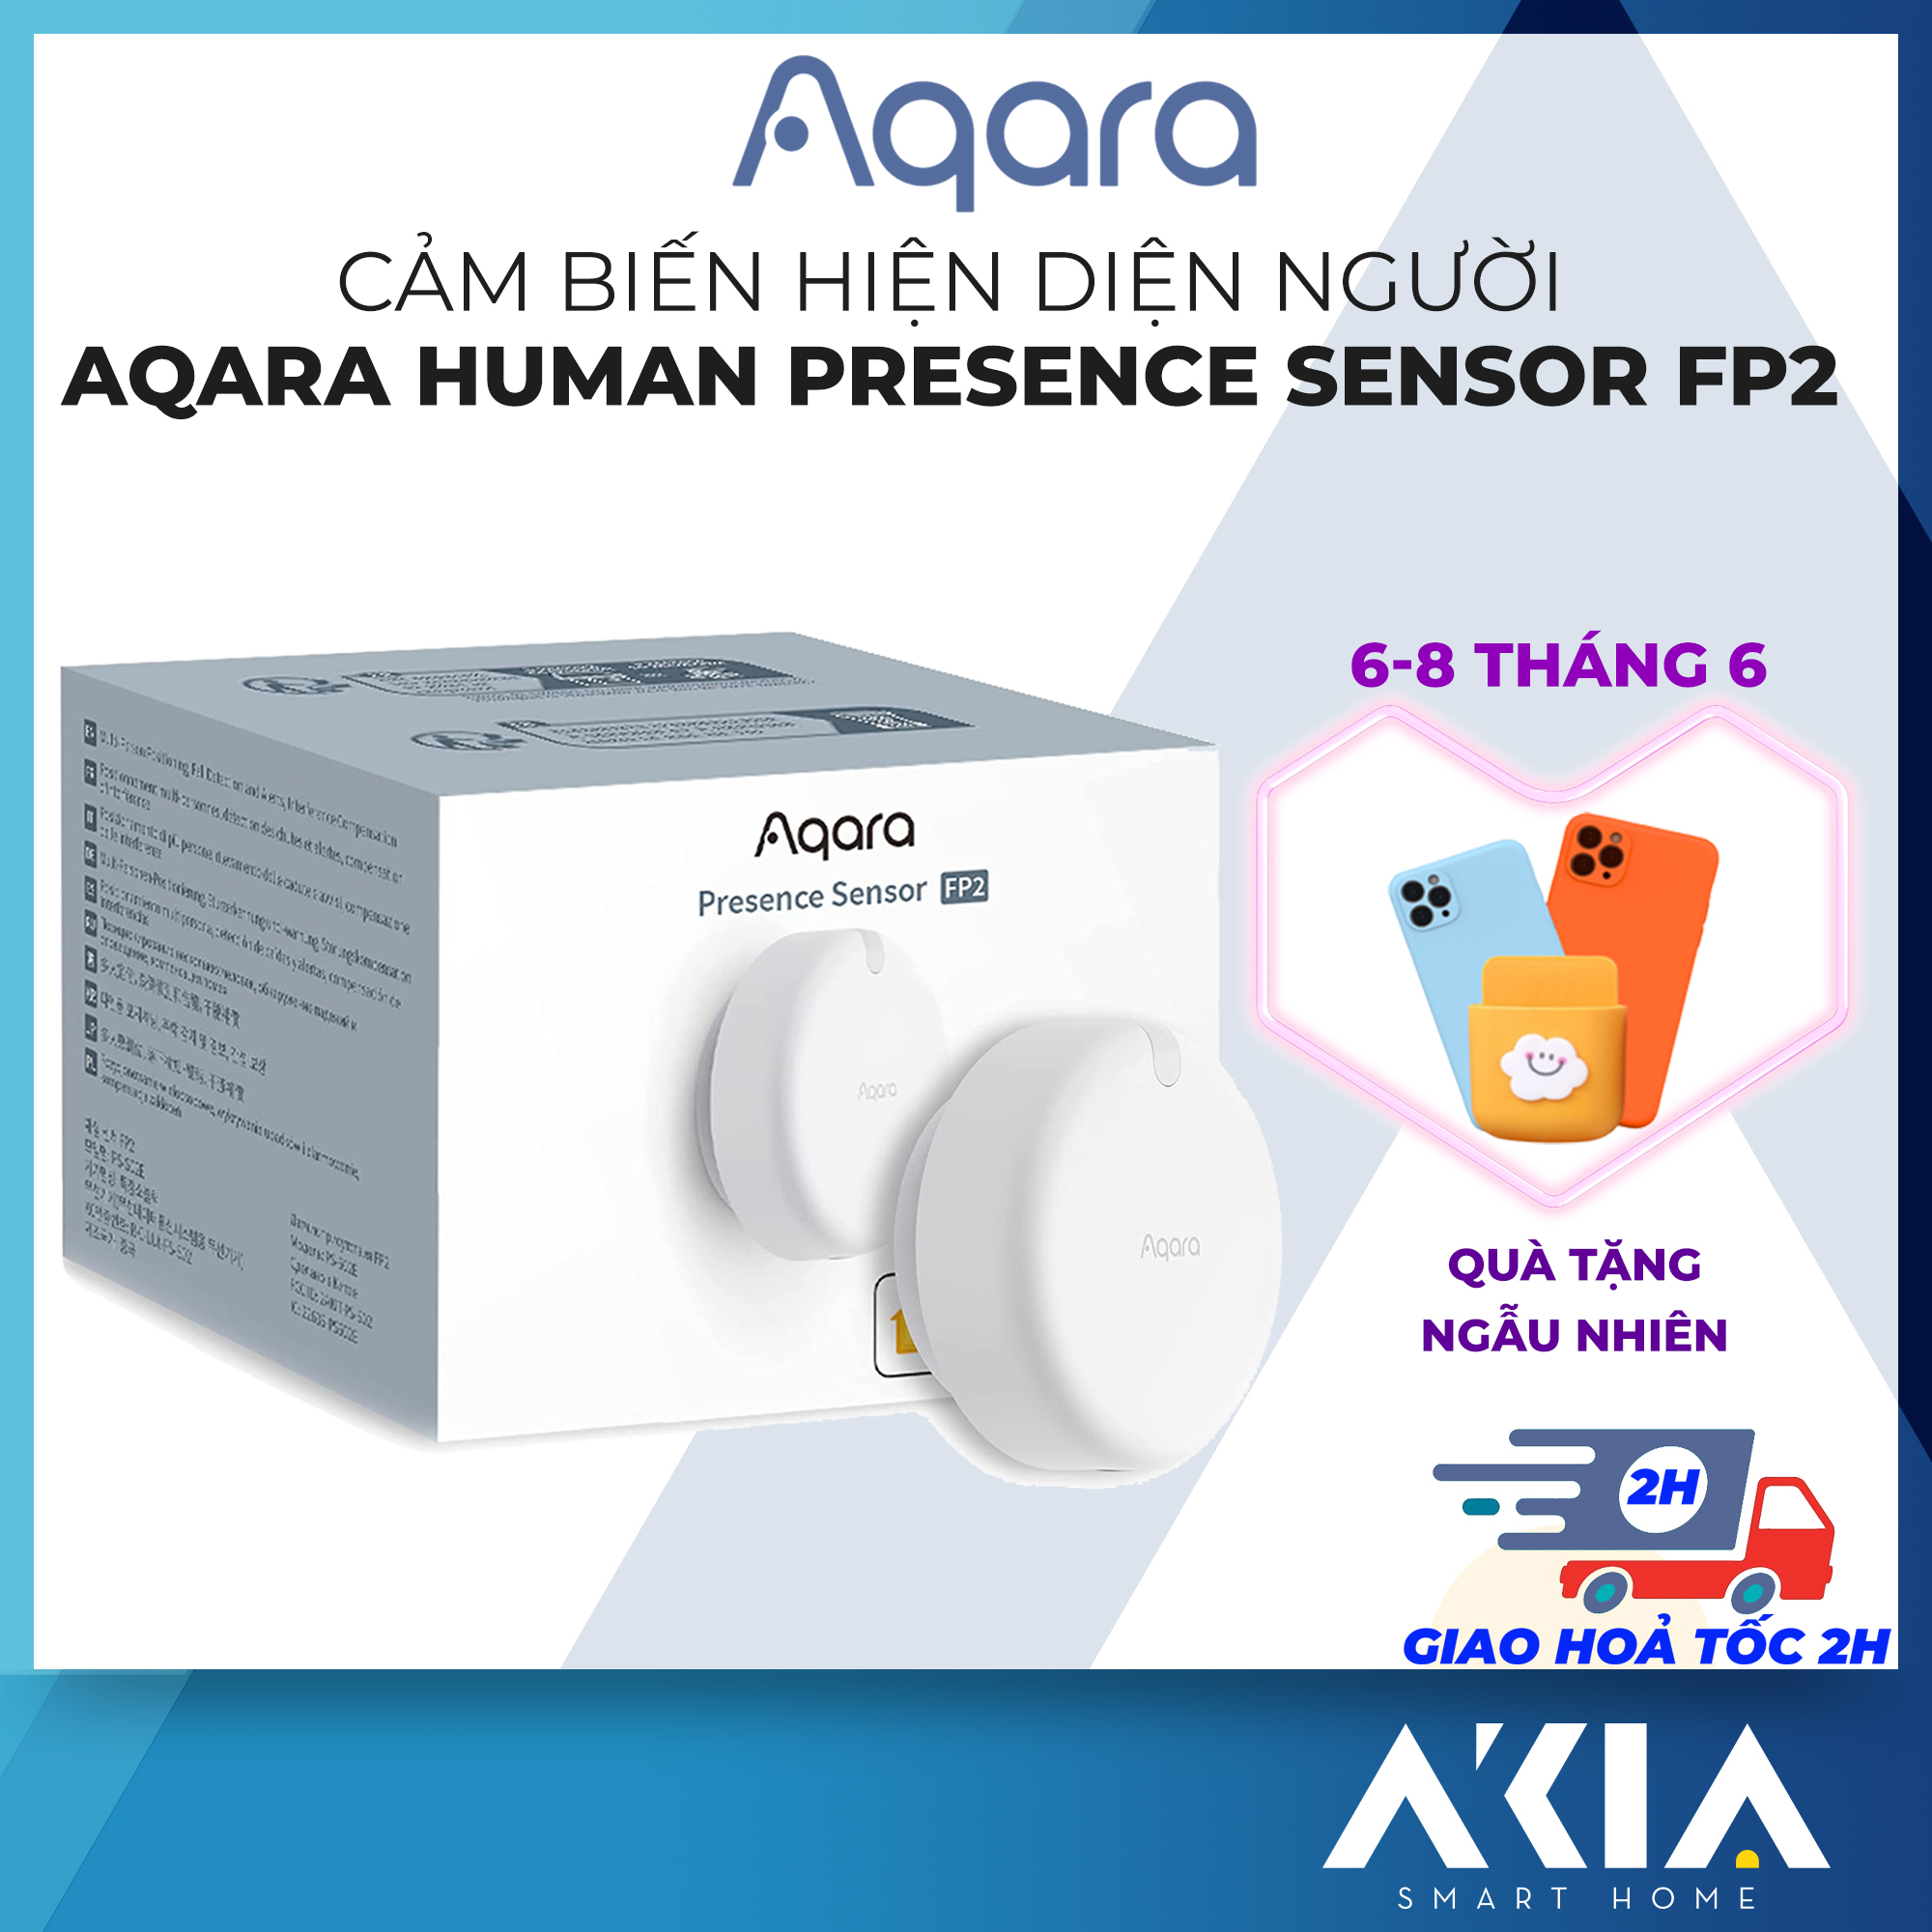 Cảm biến hiện diện người Aqara FP2 Quốc tế, Human Presence Sensor